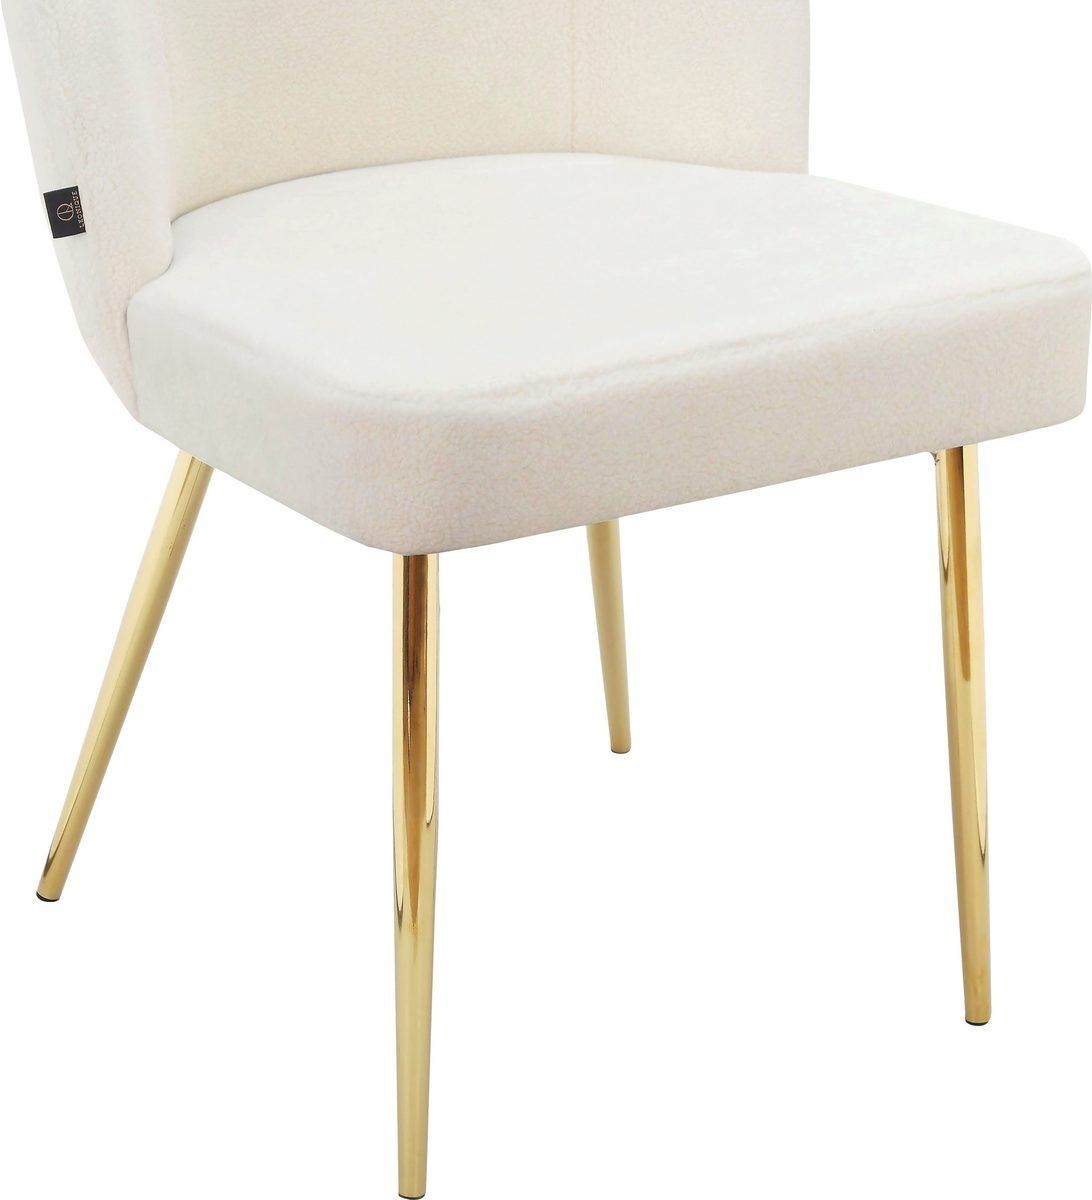 Krzesło materiał białe nogi złote